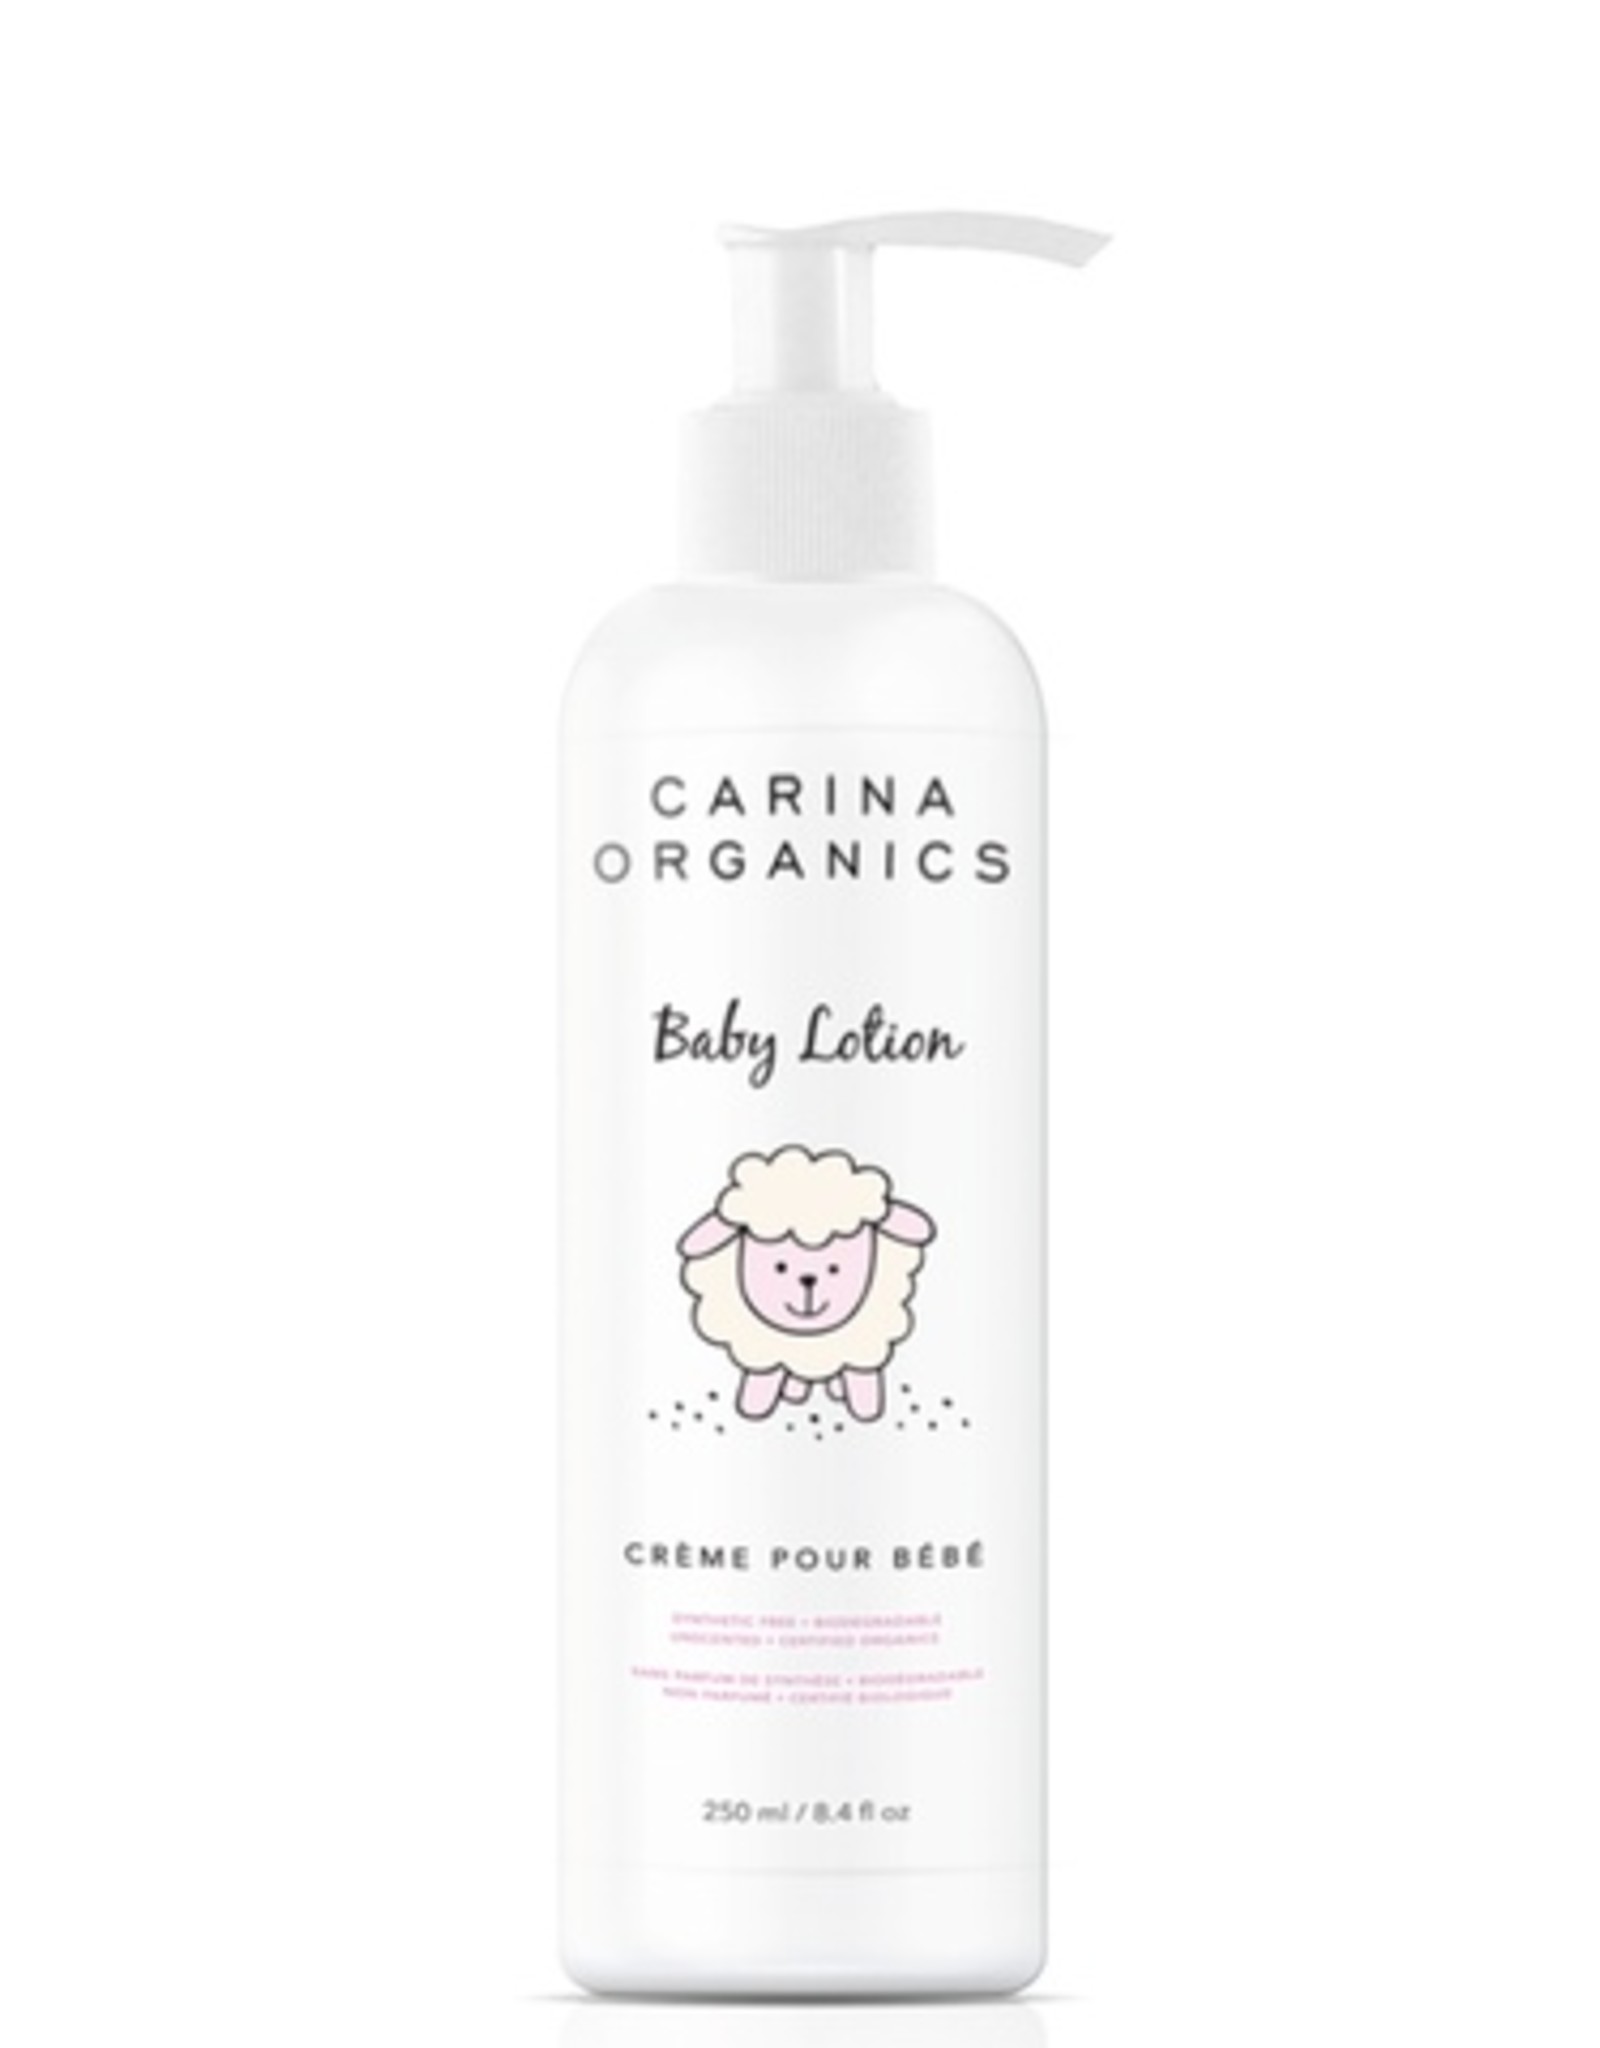 Carina Organics Baby Lotion